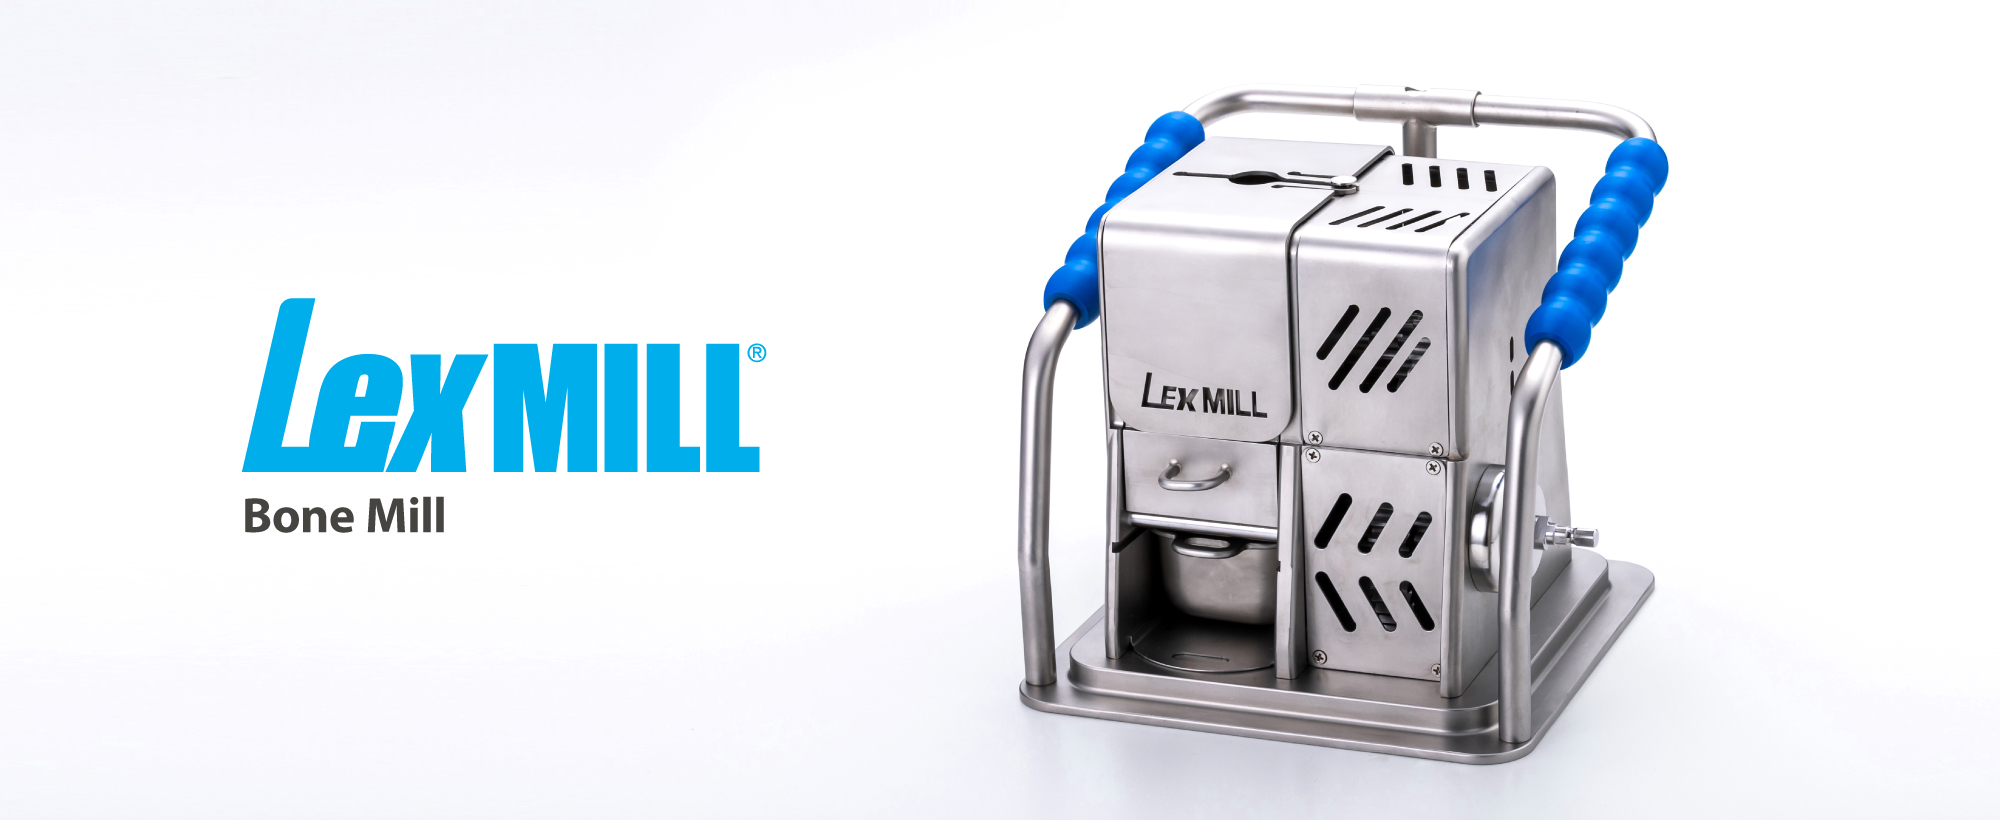 Bone mill LexMILL